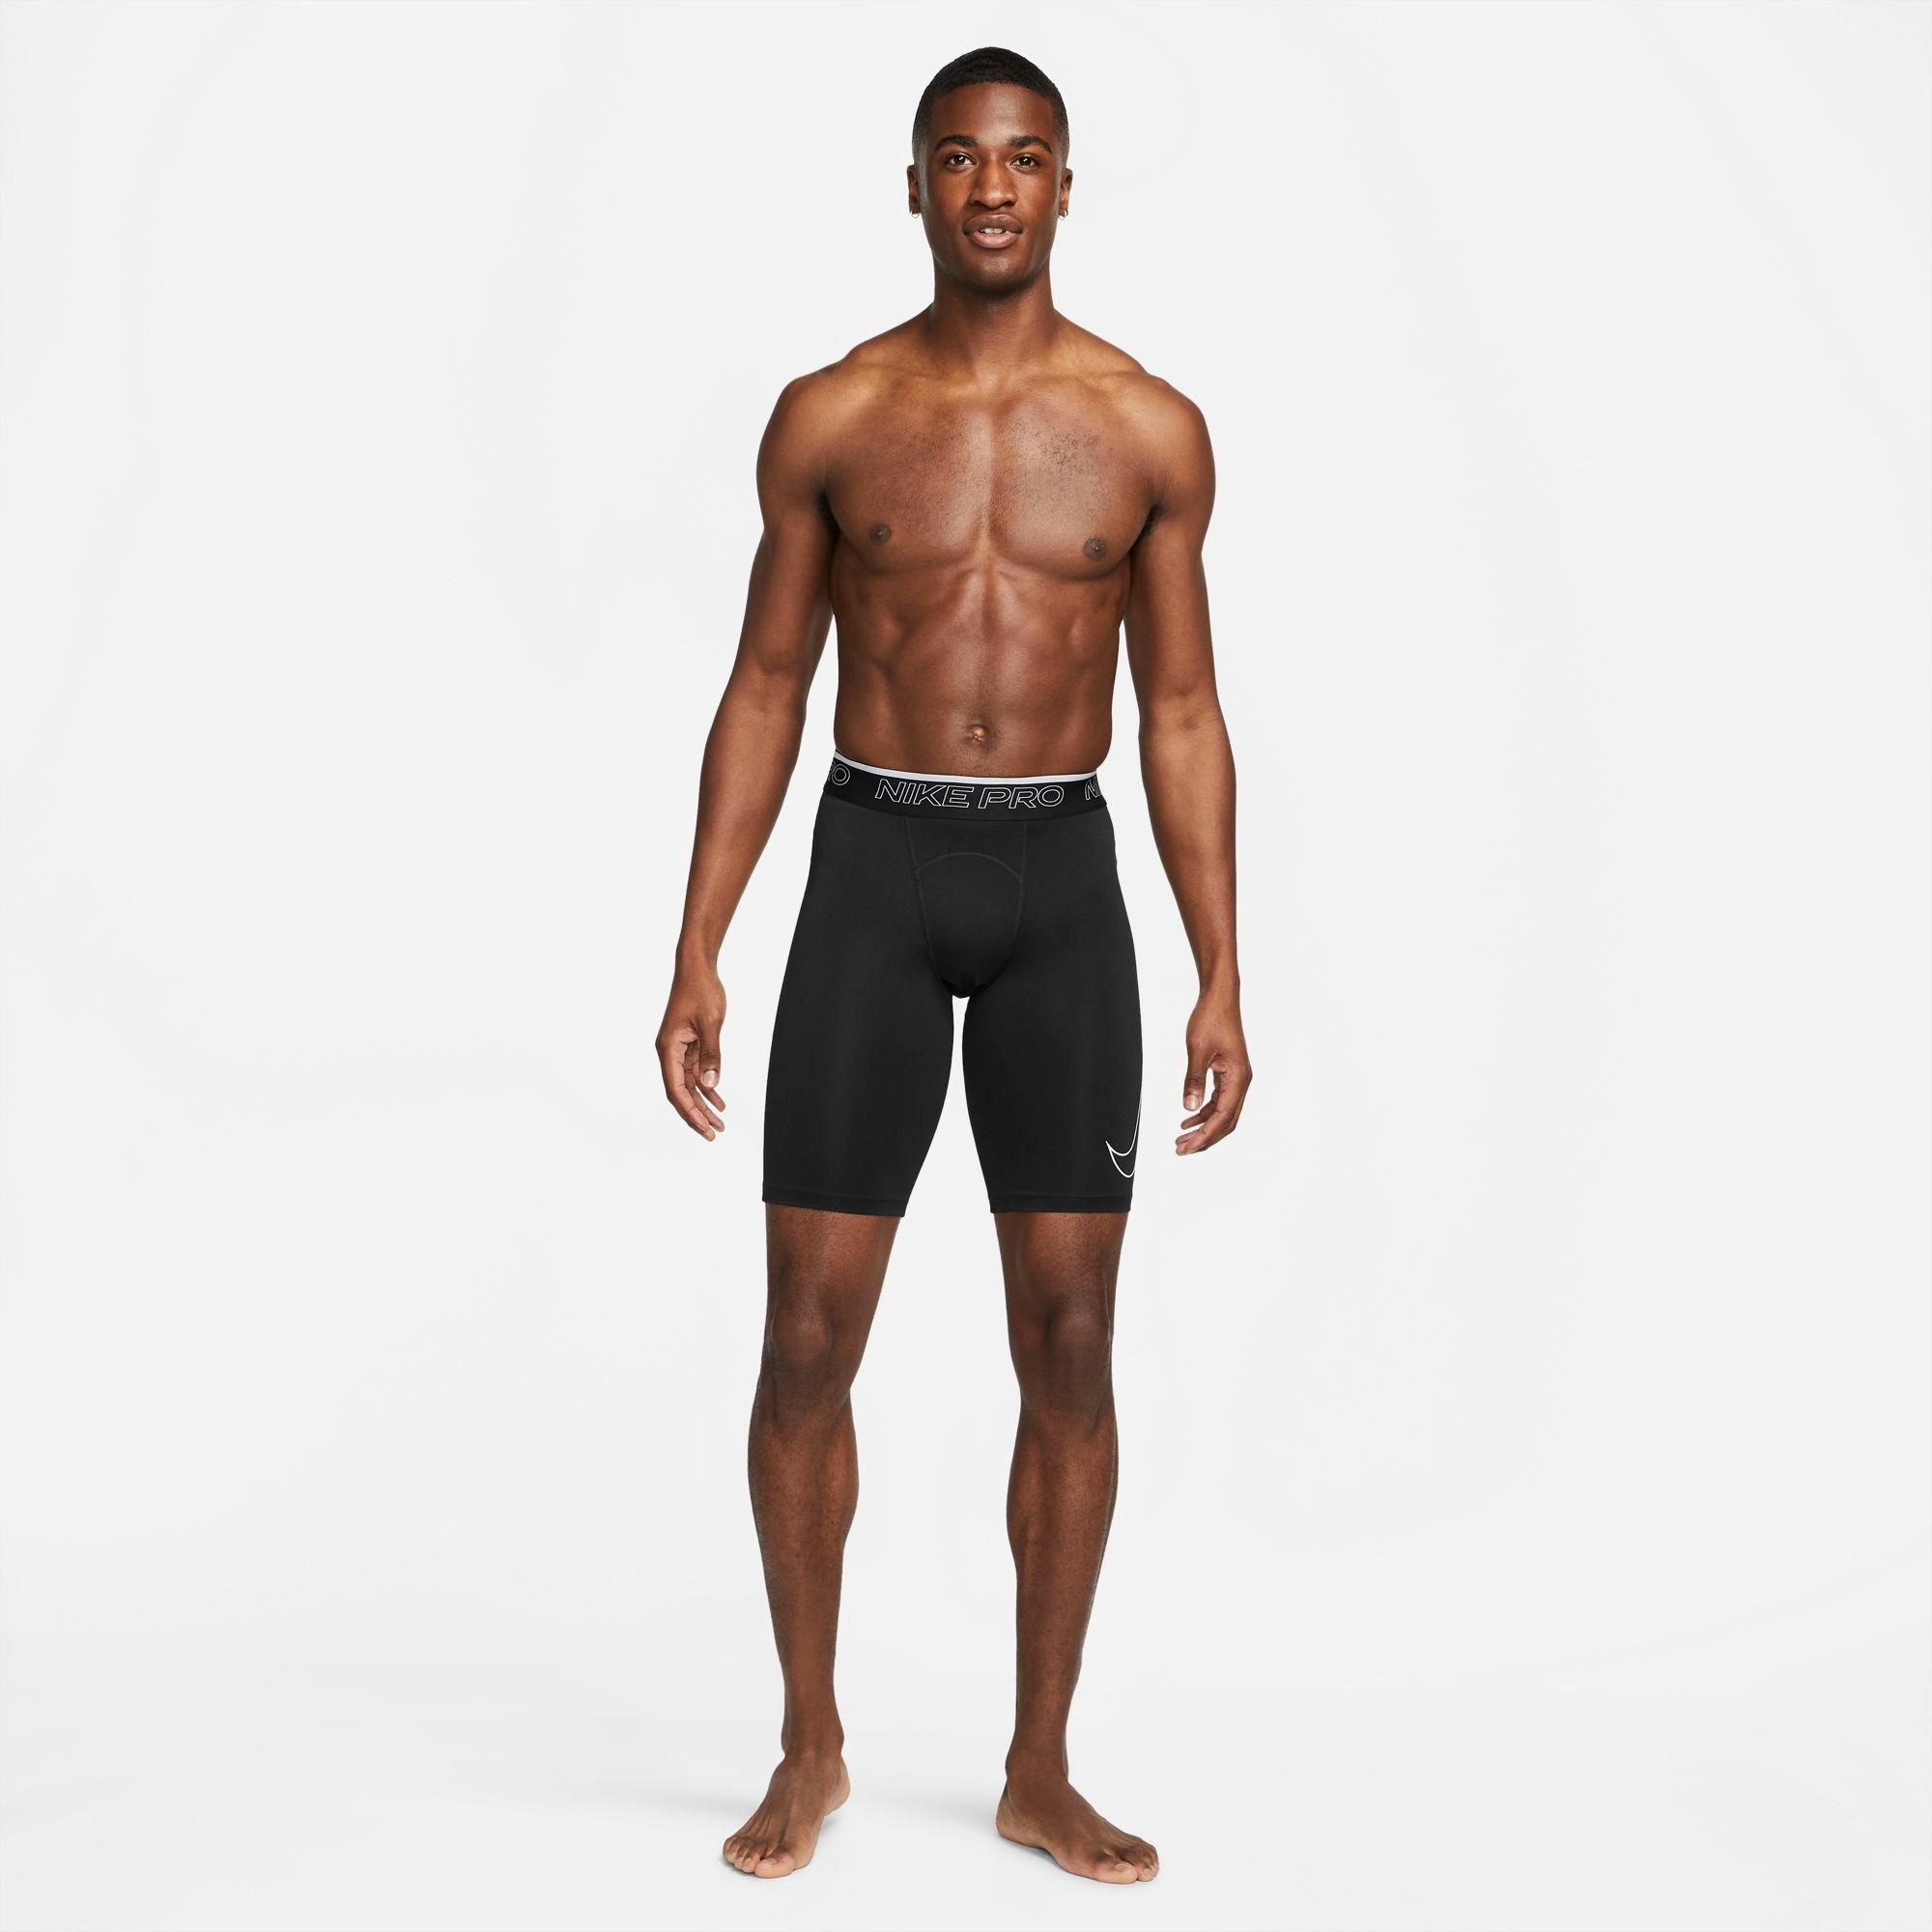 Nike Men's Pro Dri-FIT Long Comp Shorts